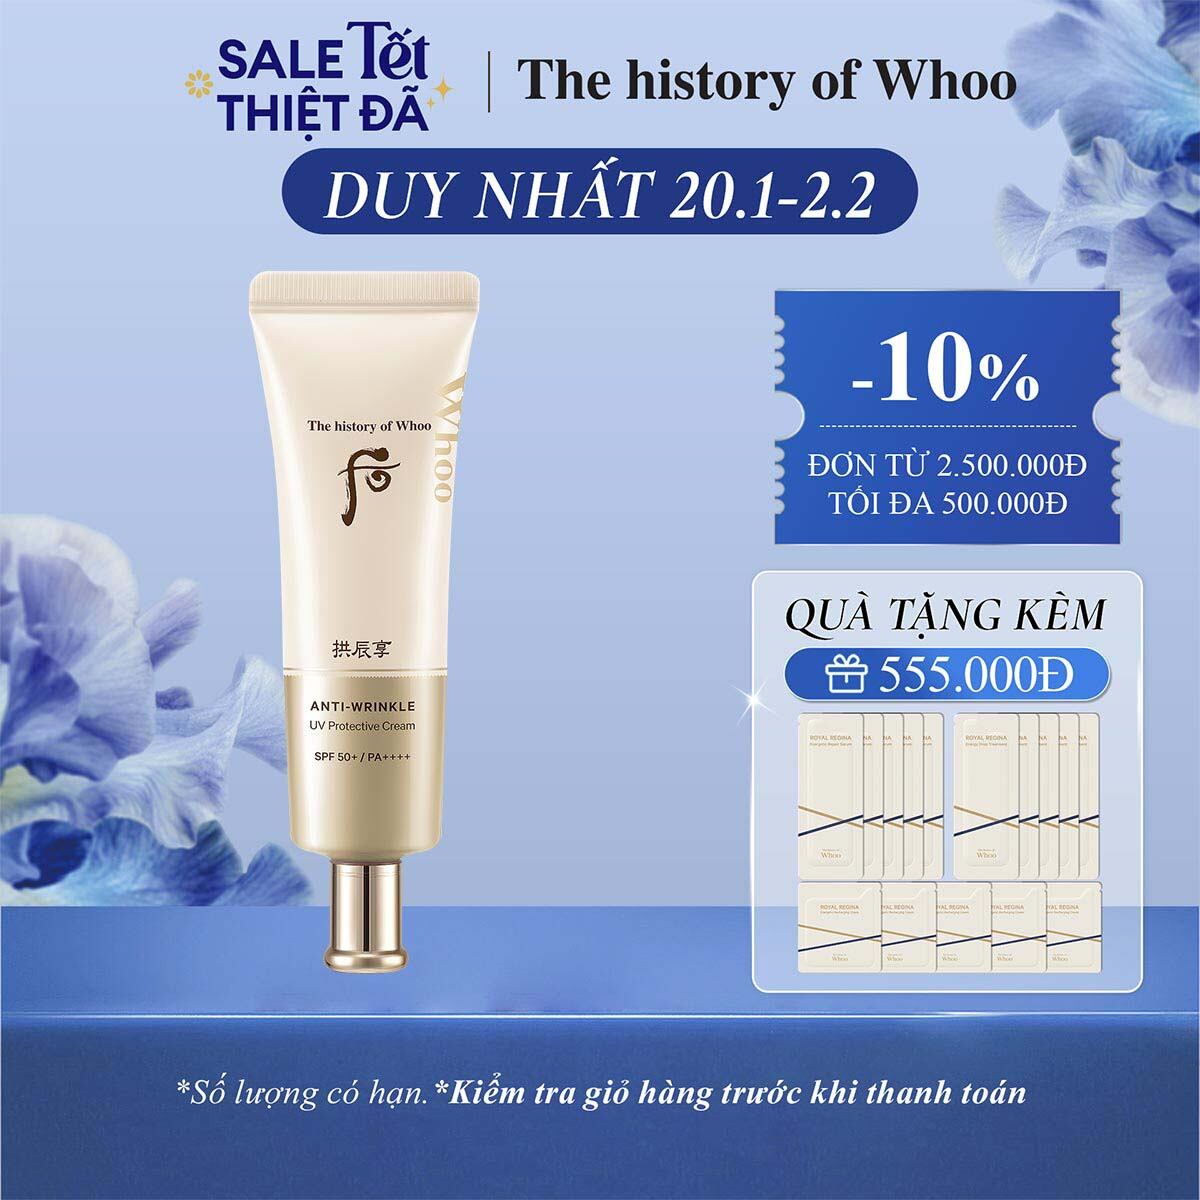 Kem chống nắng cải thiện nếp nhăn The history of Whoo Gongjinhyang Anti-Wrinkle UV Protective Cream SPF 50+, PA++++  50ML